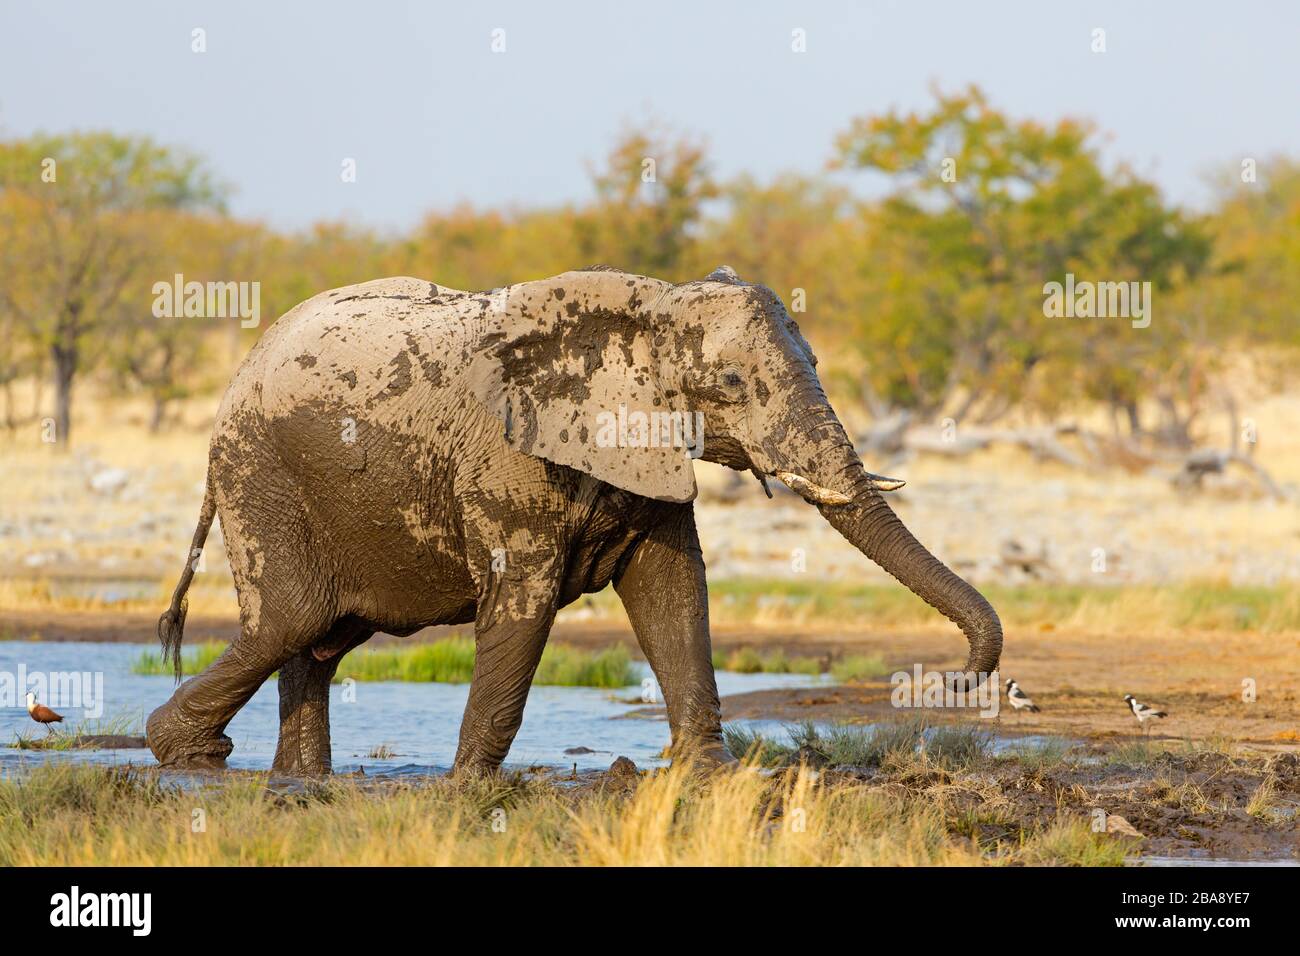 Afrikanischer Elefant, Loxodonta africana, African Bush Elephant, African Savanna Elephant,  Éléphant de savane d'Afrique, afrika elefanto Stock Photo